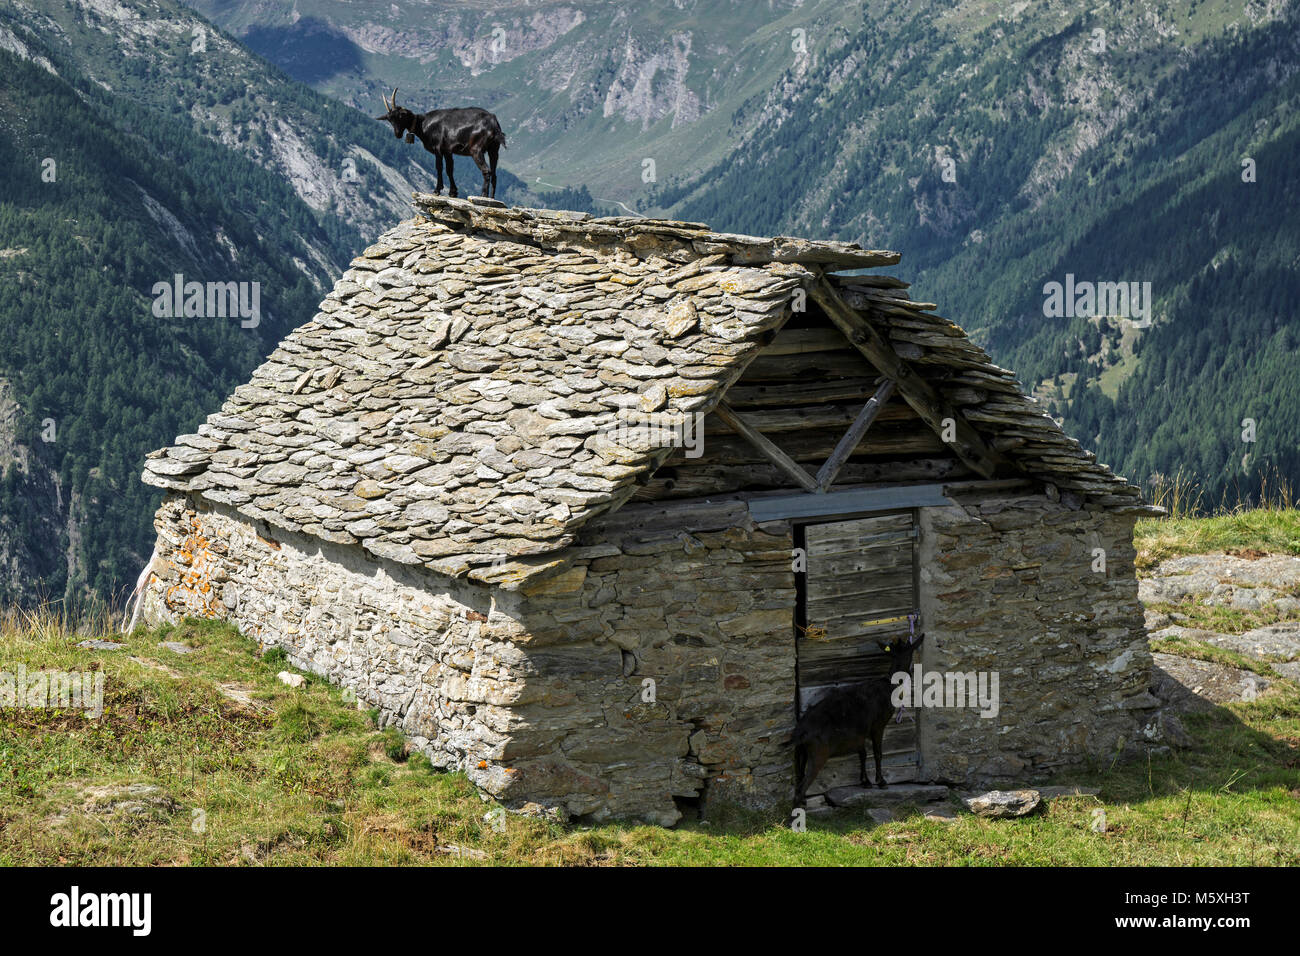 Goat (Capra) on the roof of an old stone hut near the Alpe Corte del Sasso, Lavizzara, Canton Ticino, Switzerland Stock Photo